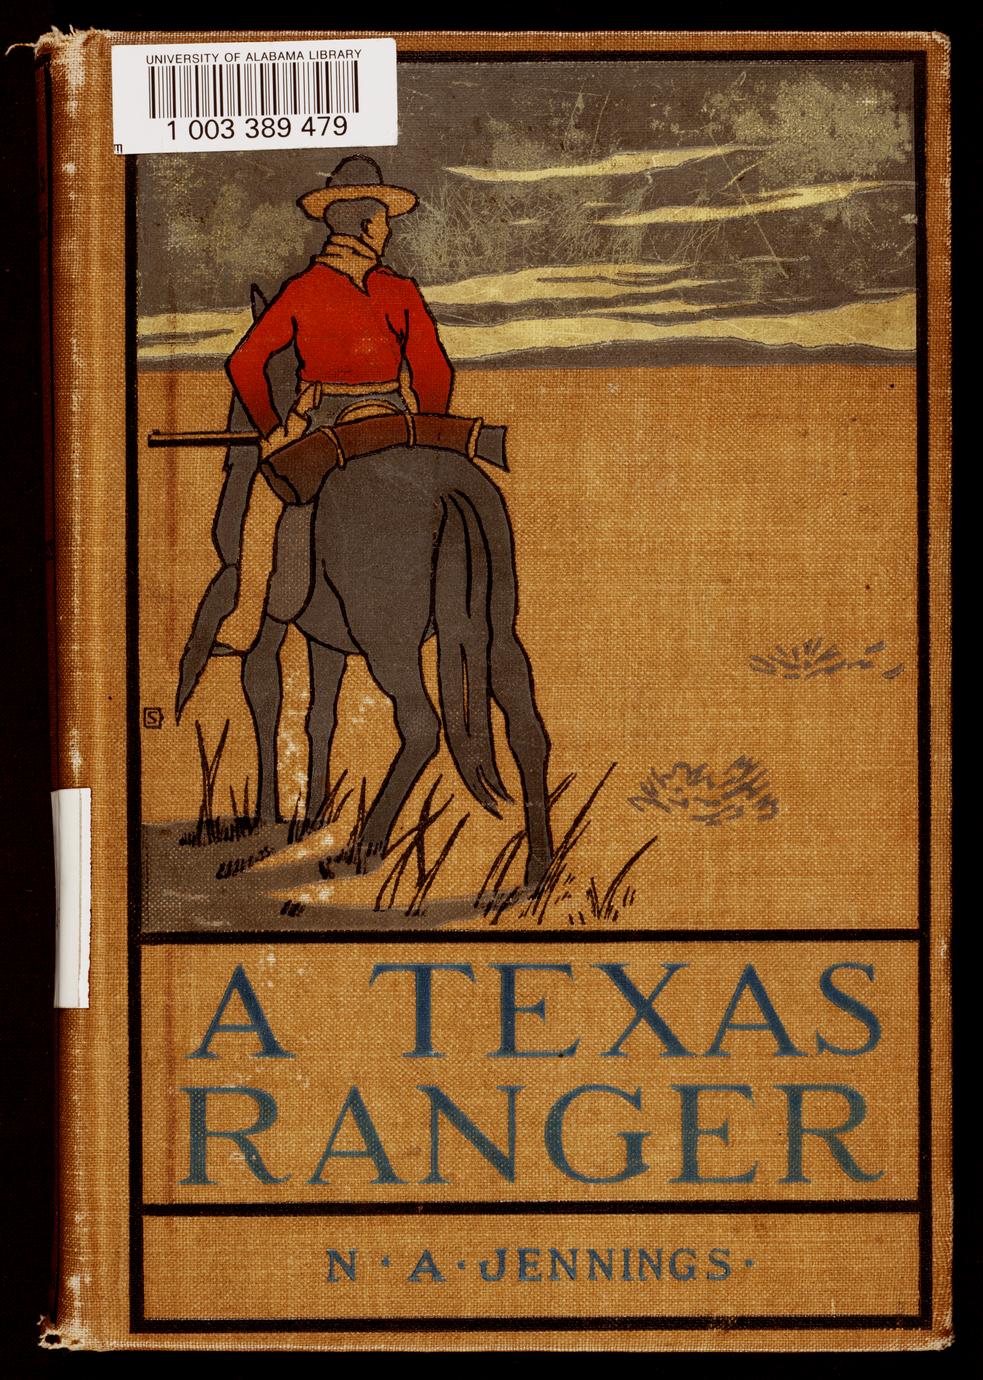 A Texas ranger (1 of 2)